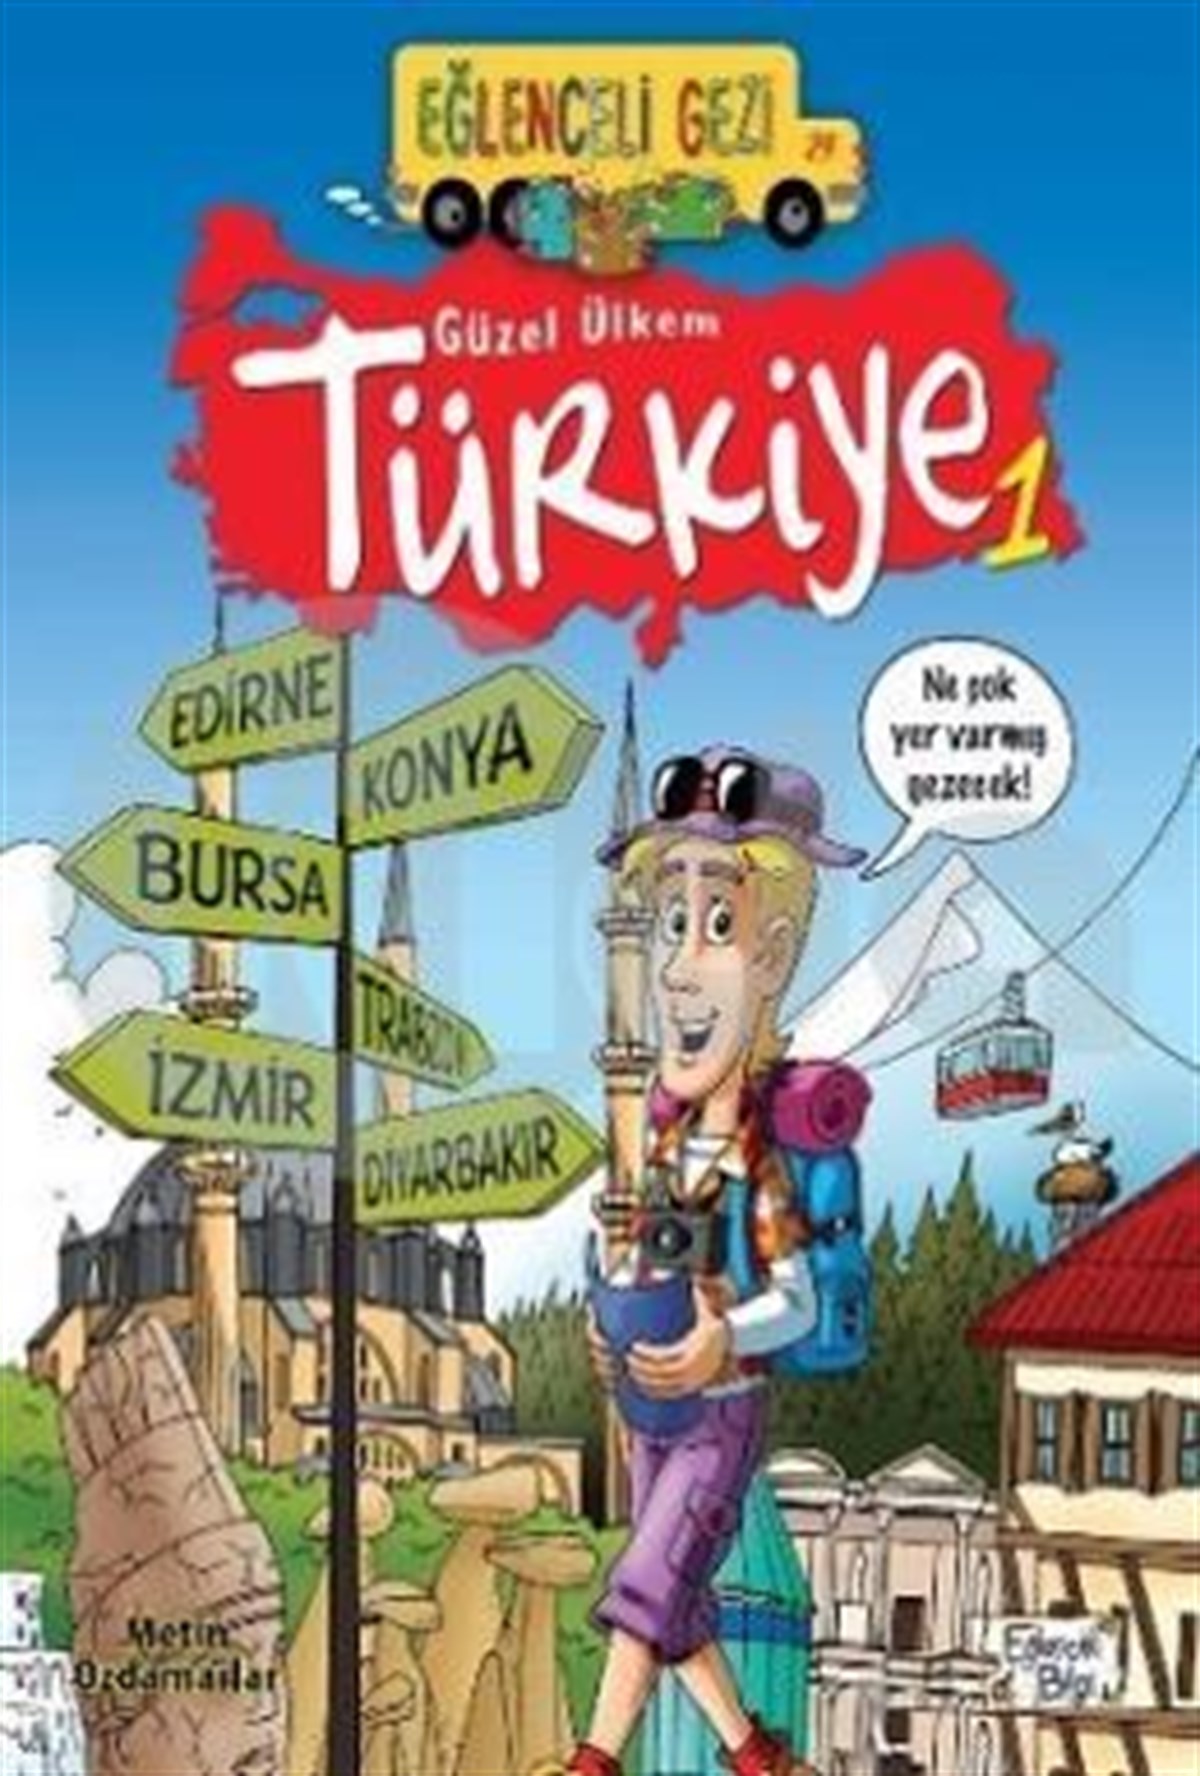 GUZEL ULKEM TURKIYE 1